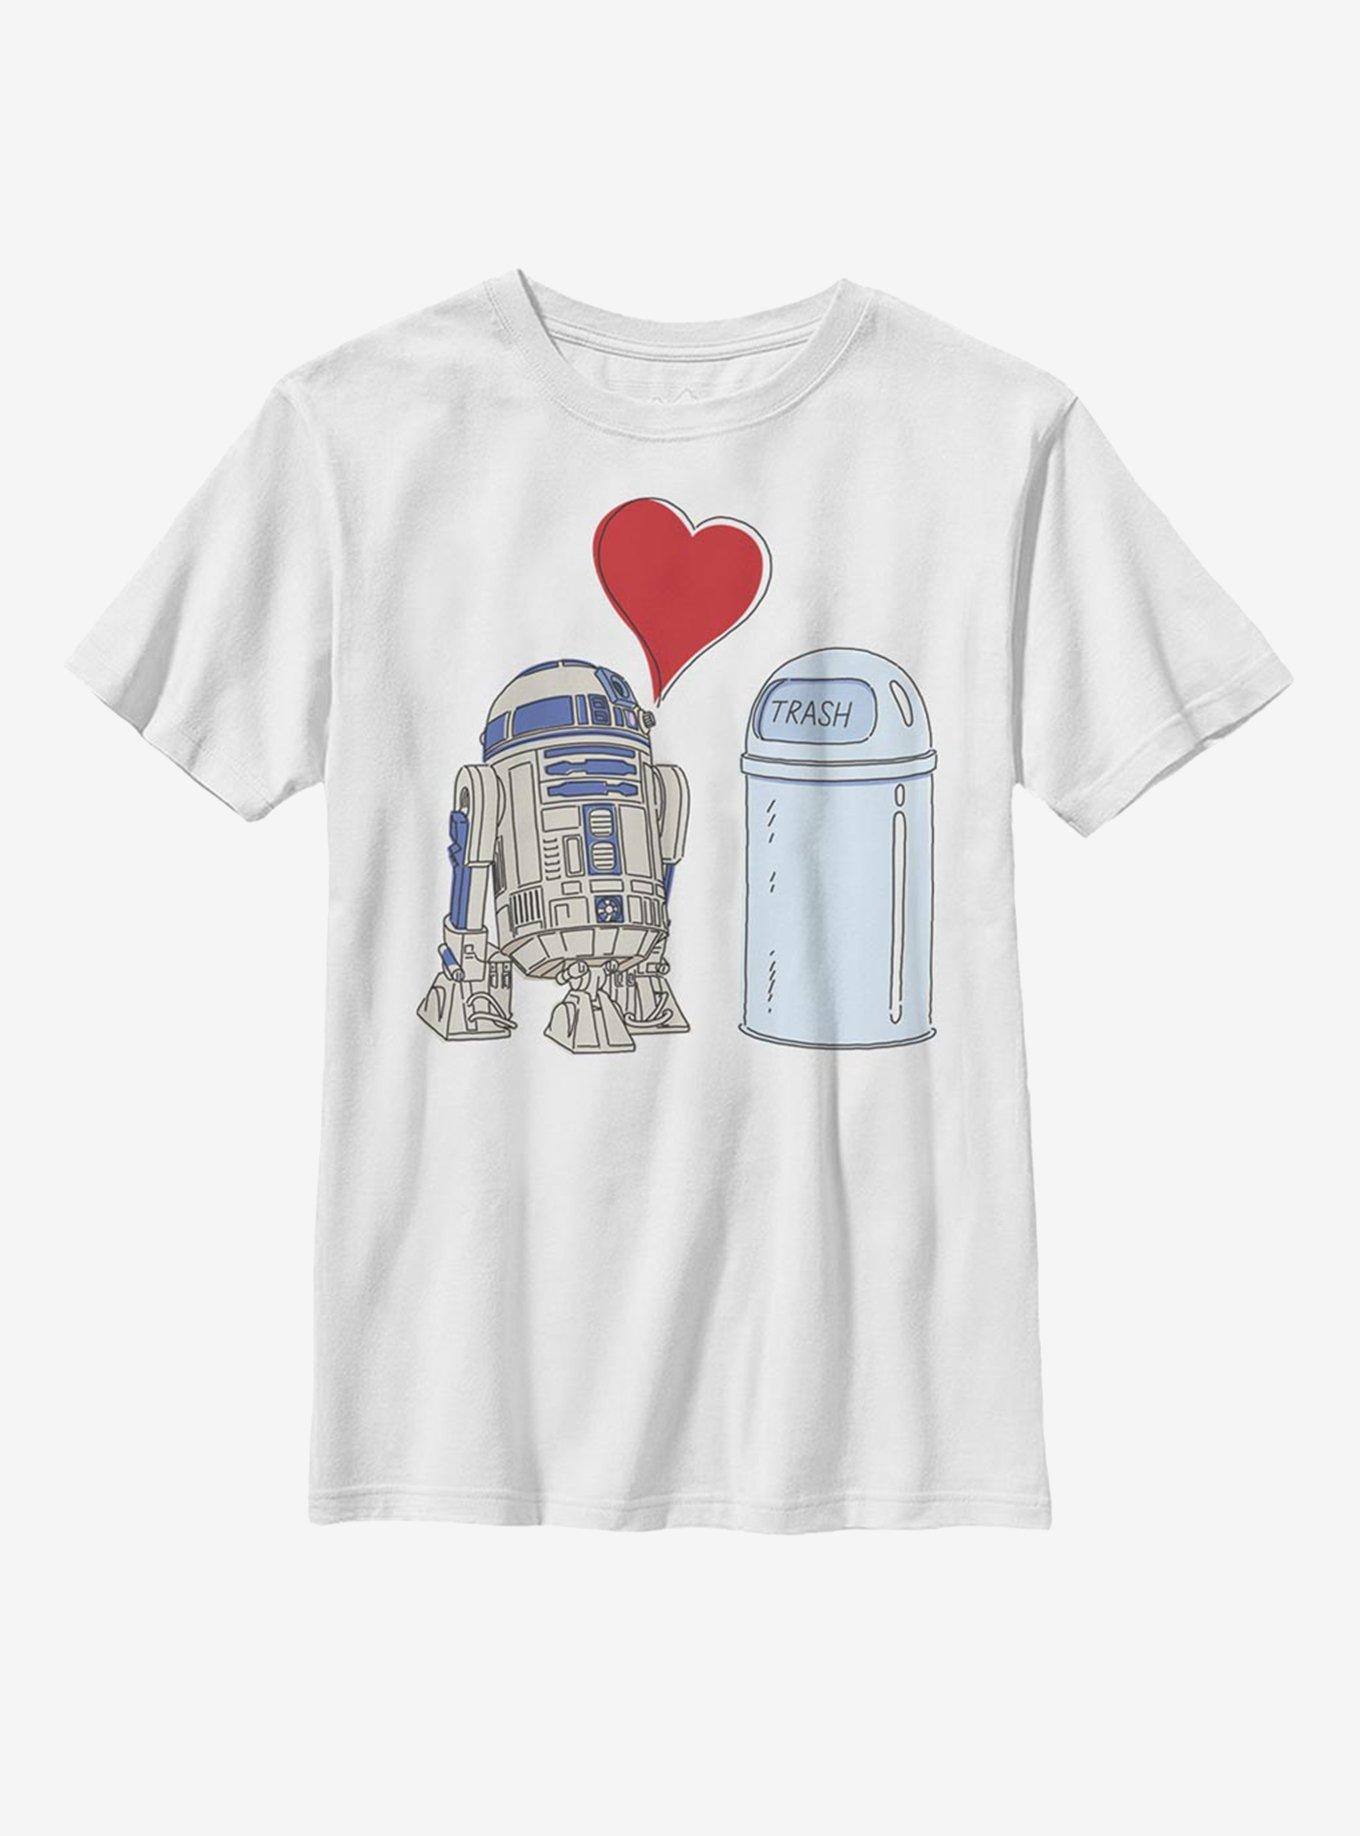 Star Wars R2D2 Trash Love Youth T-Shirt, , hi-res